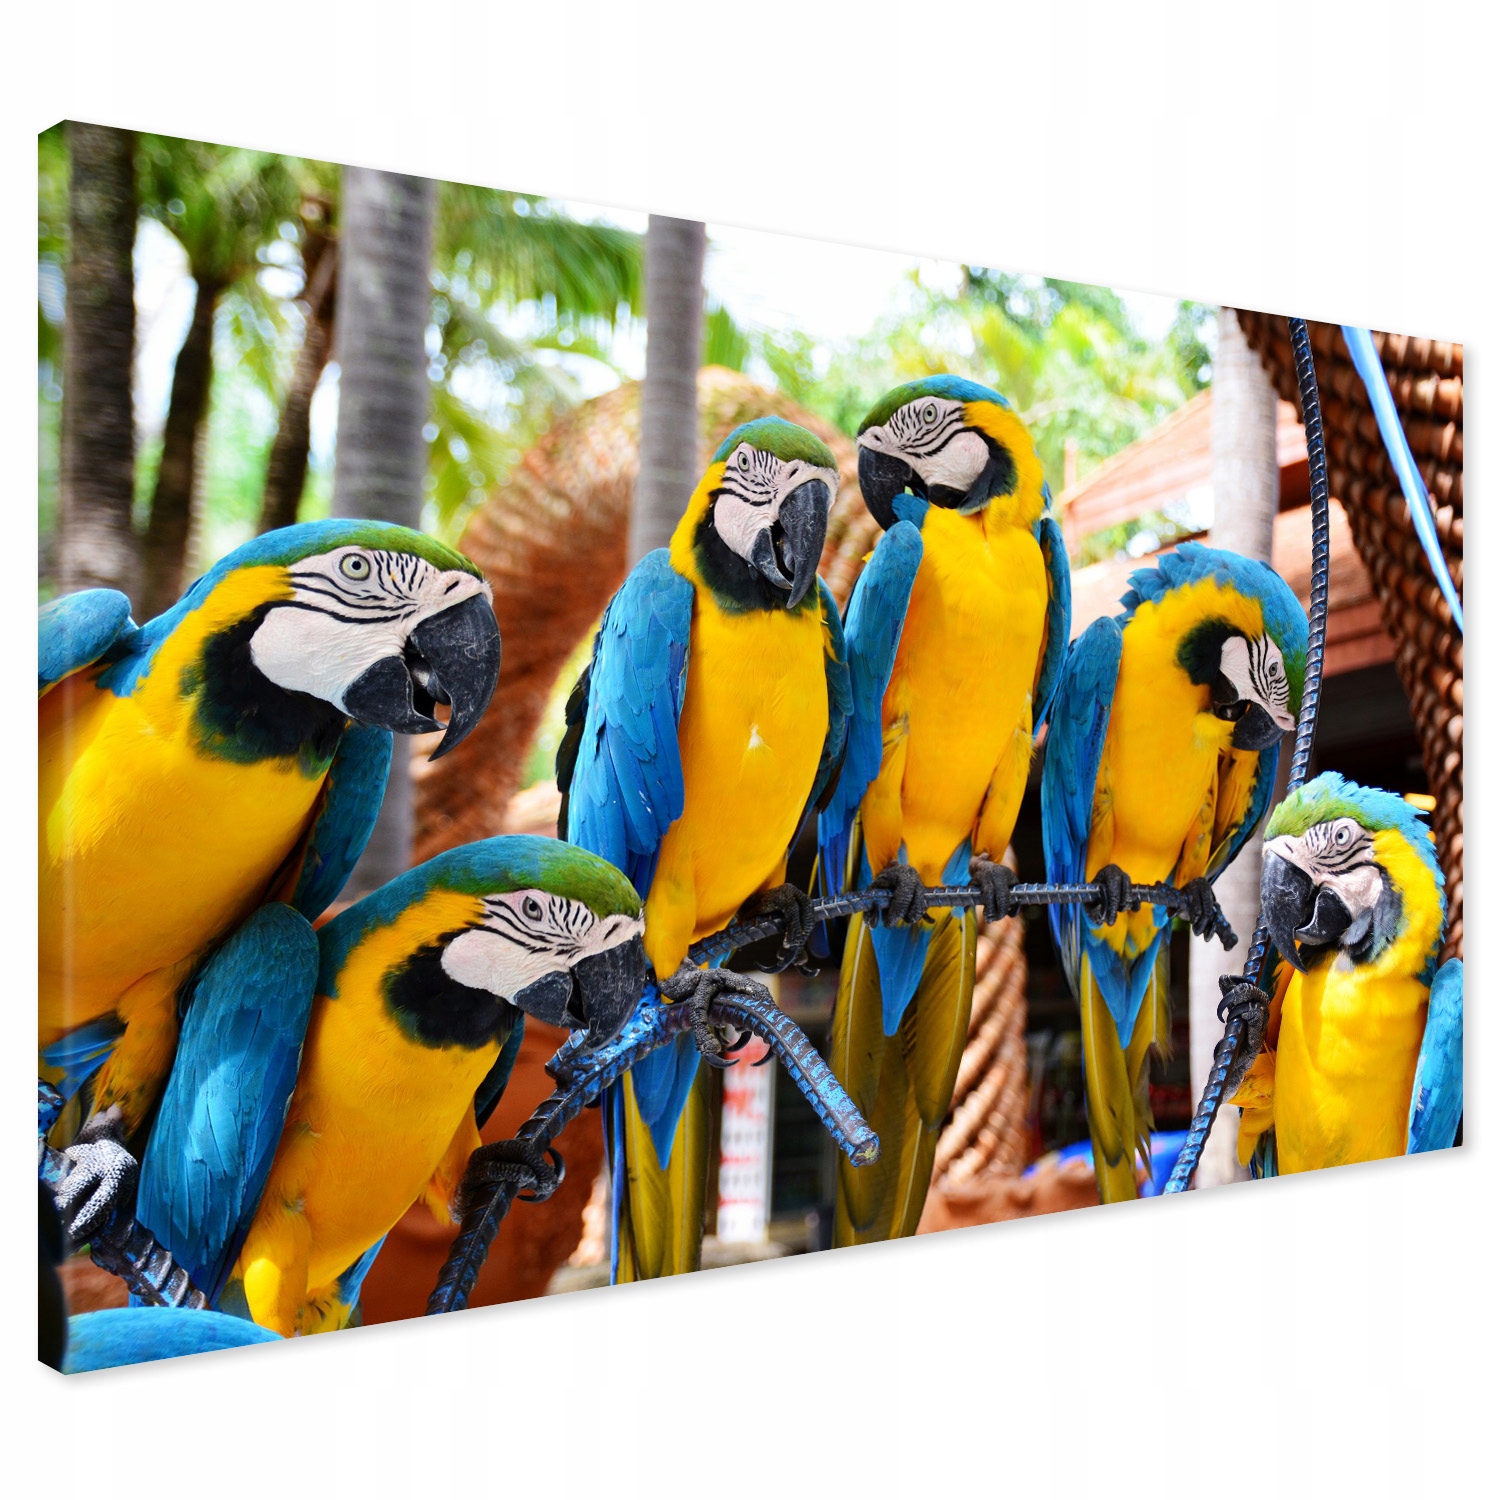 

Obraz na płótnie papuga papugi kolorowe 100x70